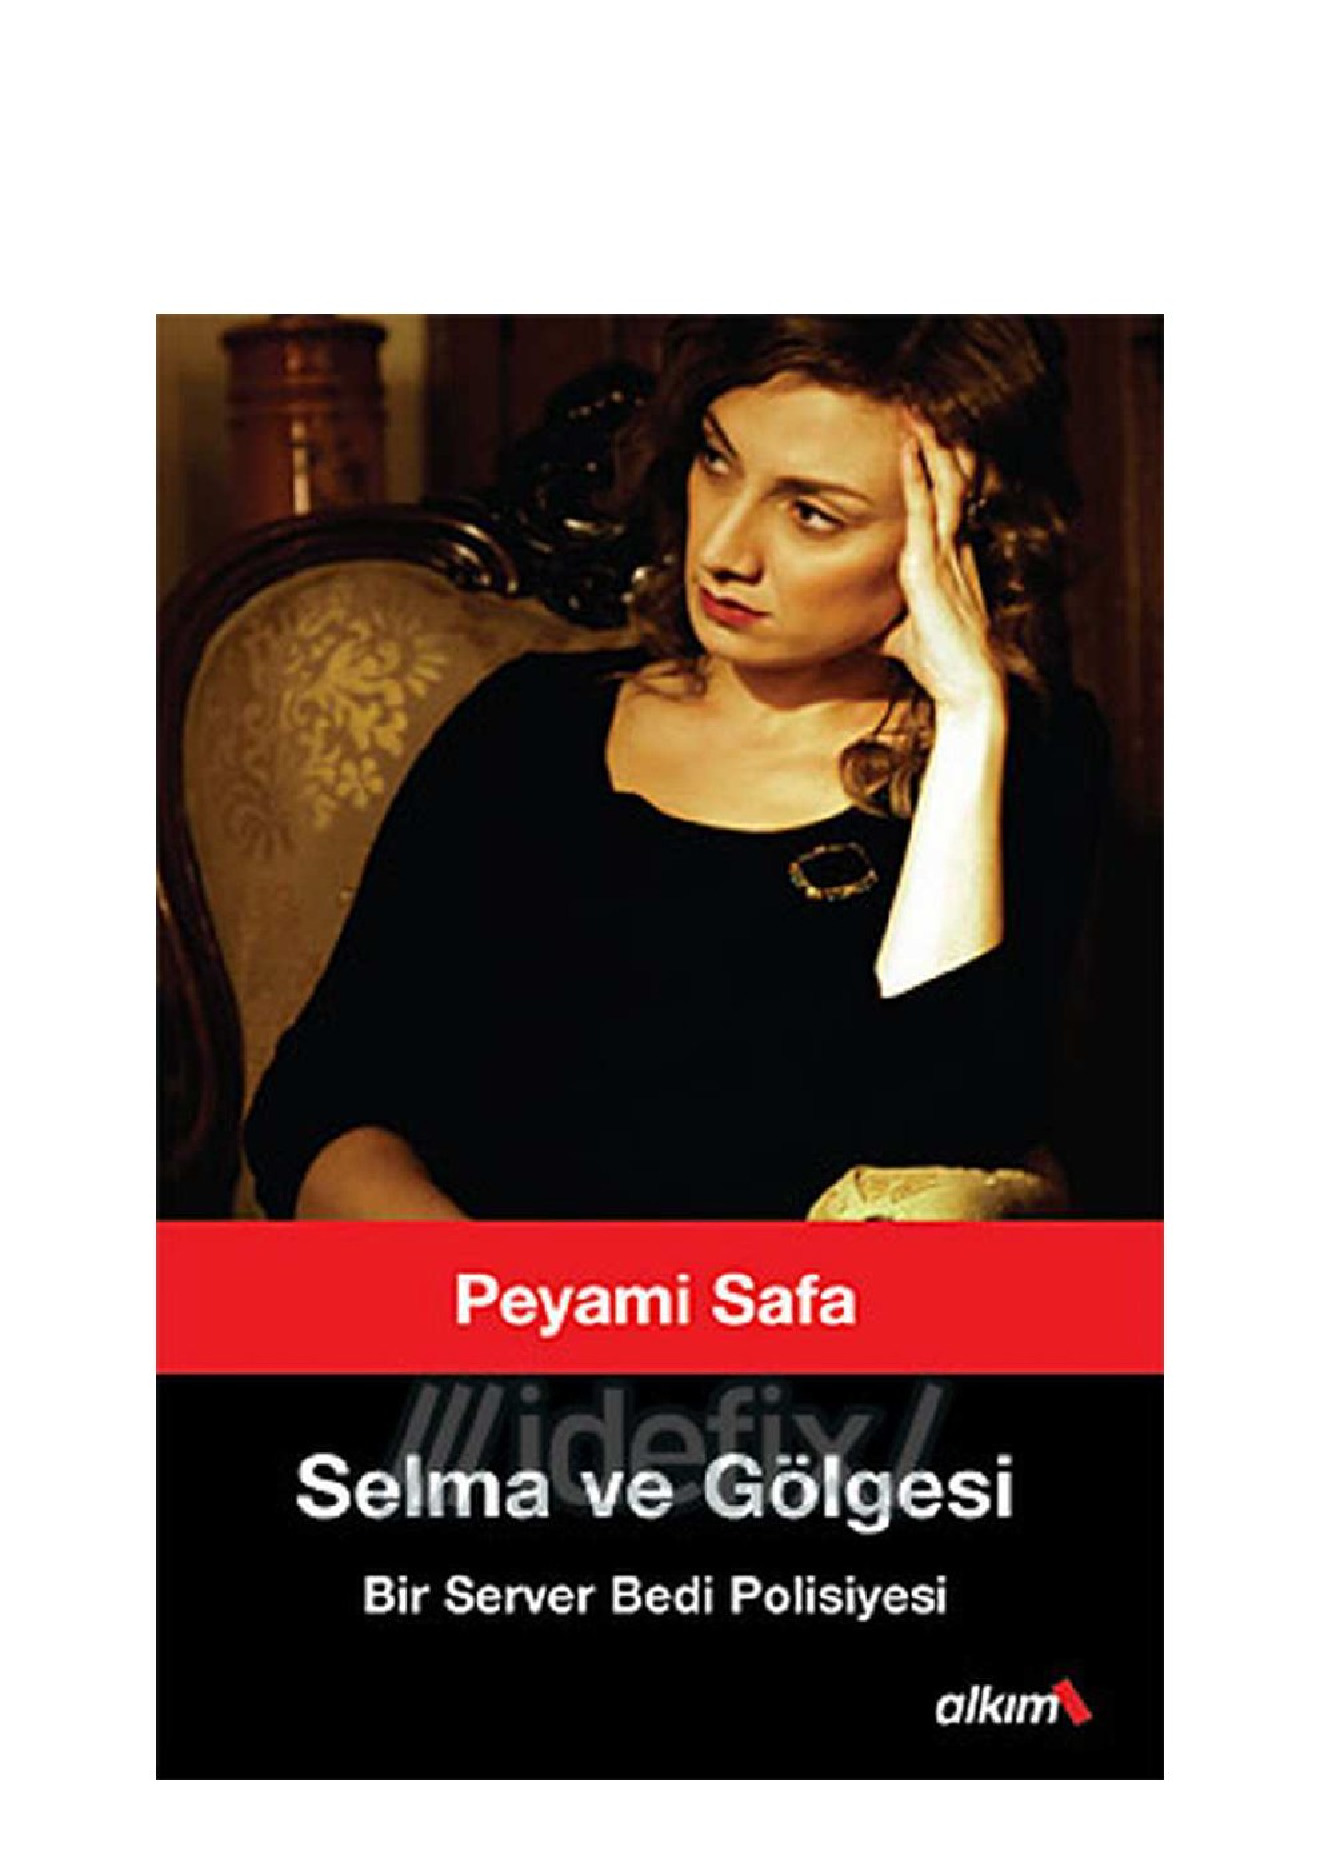 Selma ve Kölgesi-Peyami Sefa-Ergün Göze-1970-139s